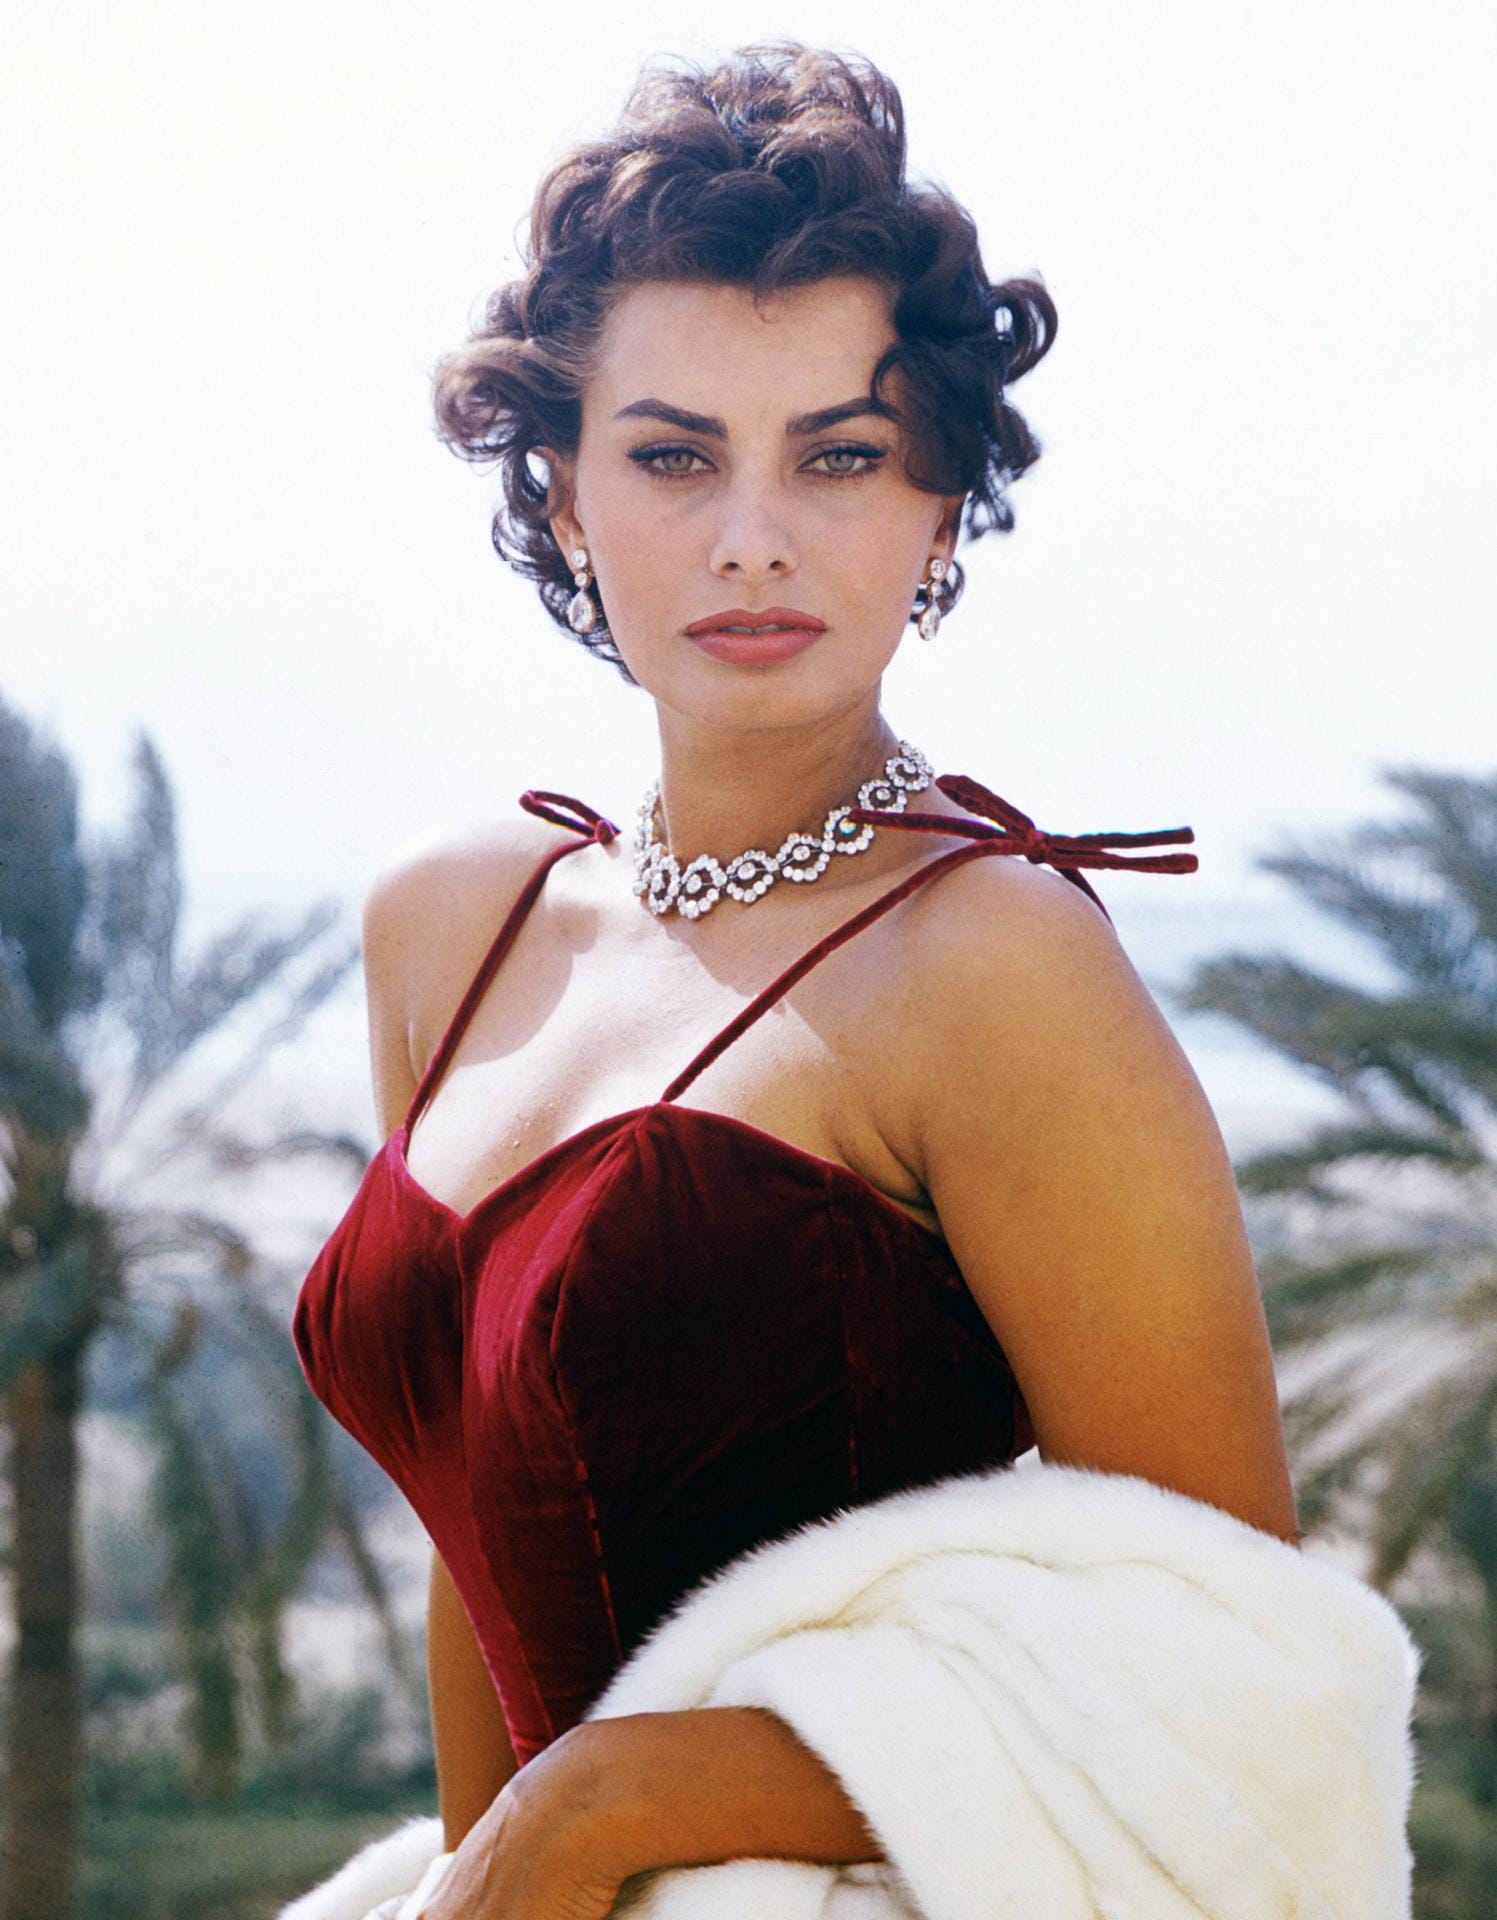 Sophia Loren (geboren 1934): Die italienische Schauspielerin begann ihre Weltkarriere in den 50er-Jahren. Noch heute gilt sie als eine der schönsten Frauen der Welt. Die Ikone musste 1982 für einige Tage ins Gefängnis – wegen Steuerhinterziehung. Ihrem Ruhm hat das keinen Abbruch getan.